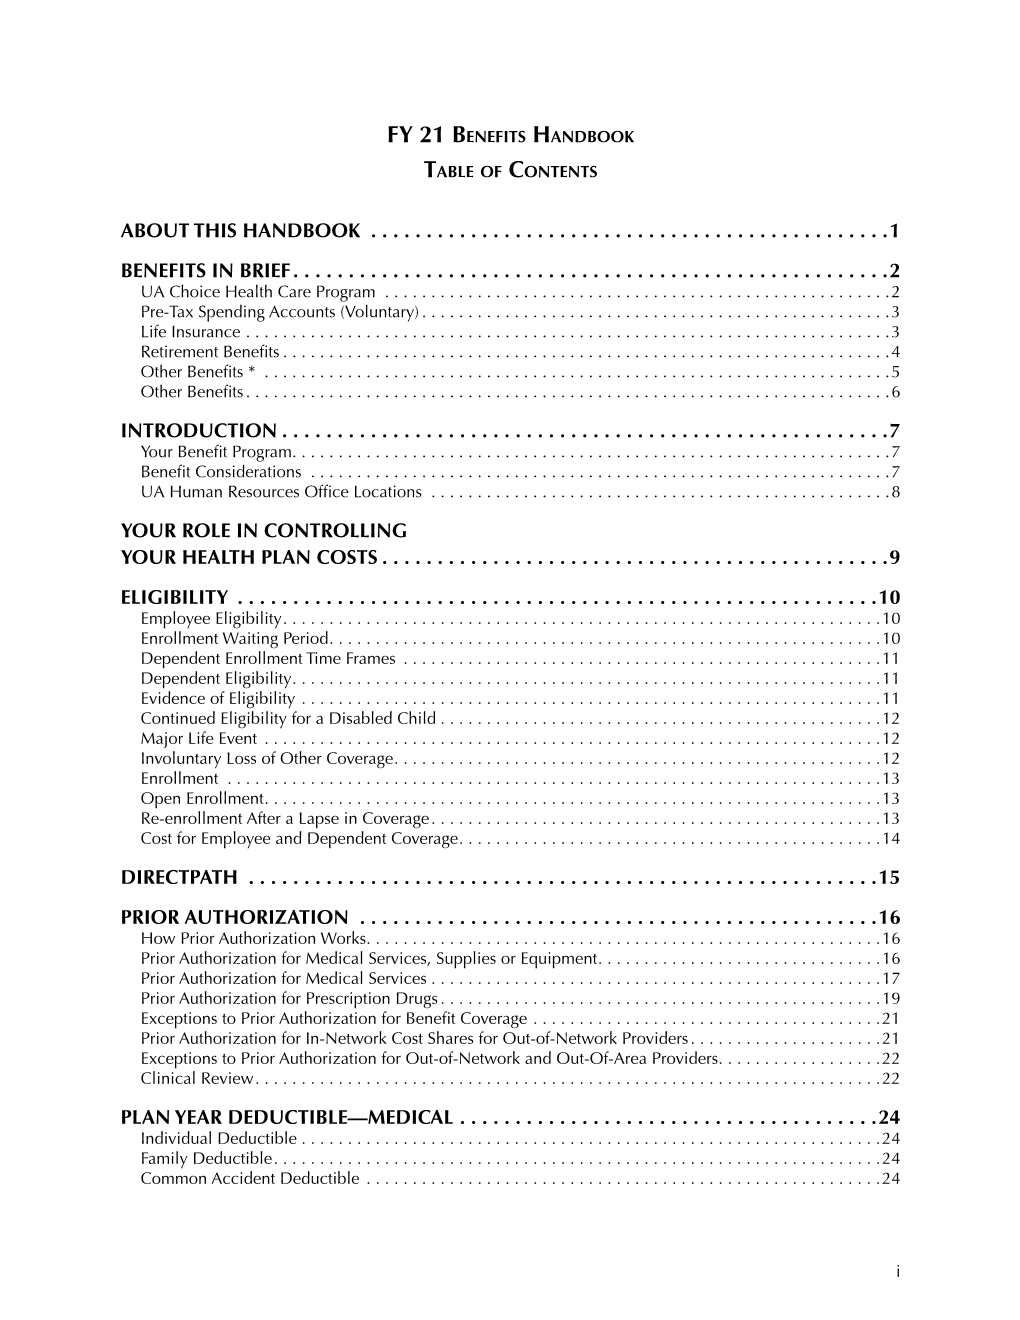 UA Employee Benefits Handbook